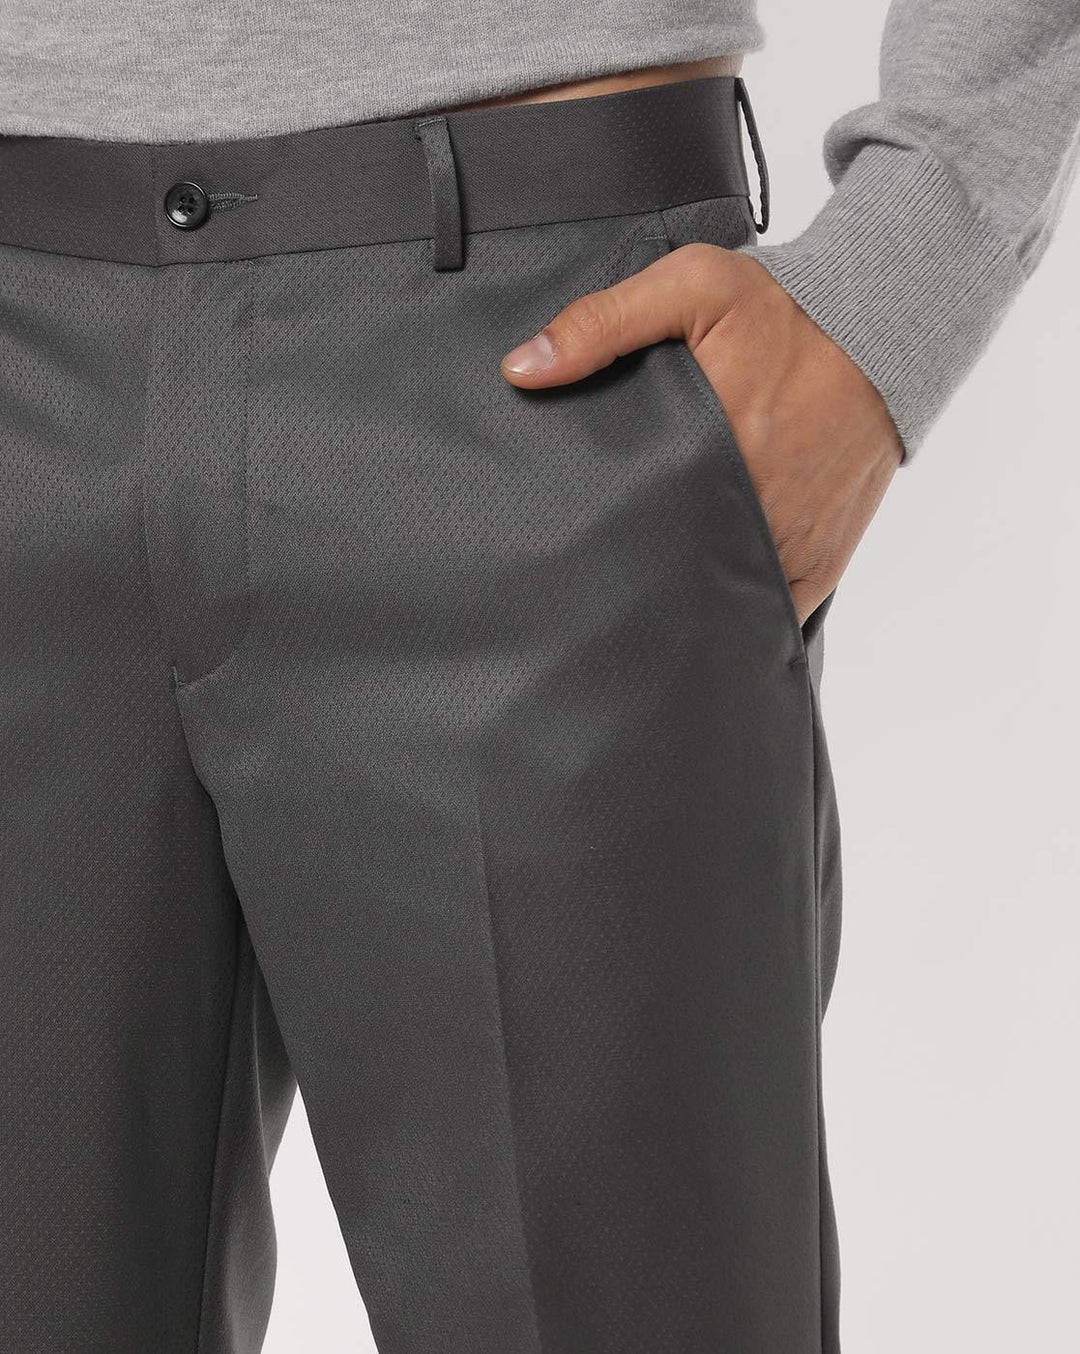 Regal Textured Grey Suit